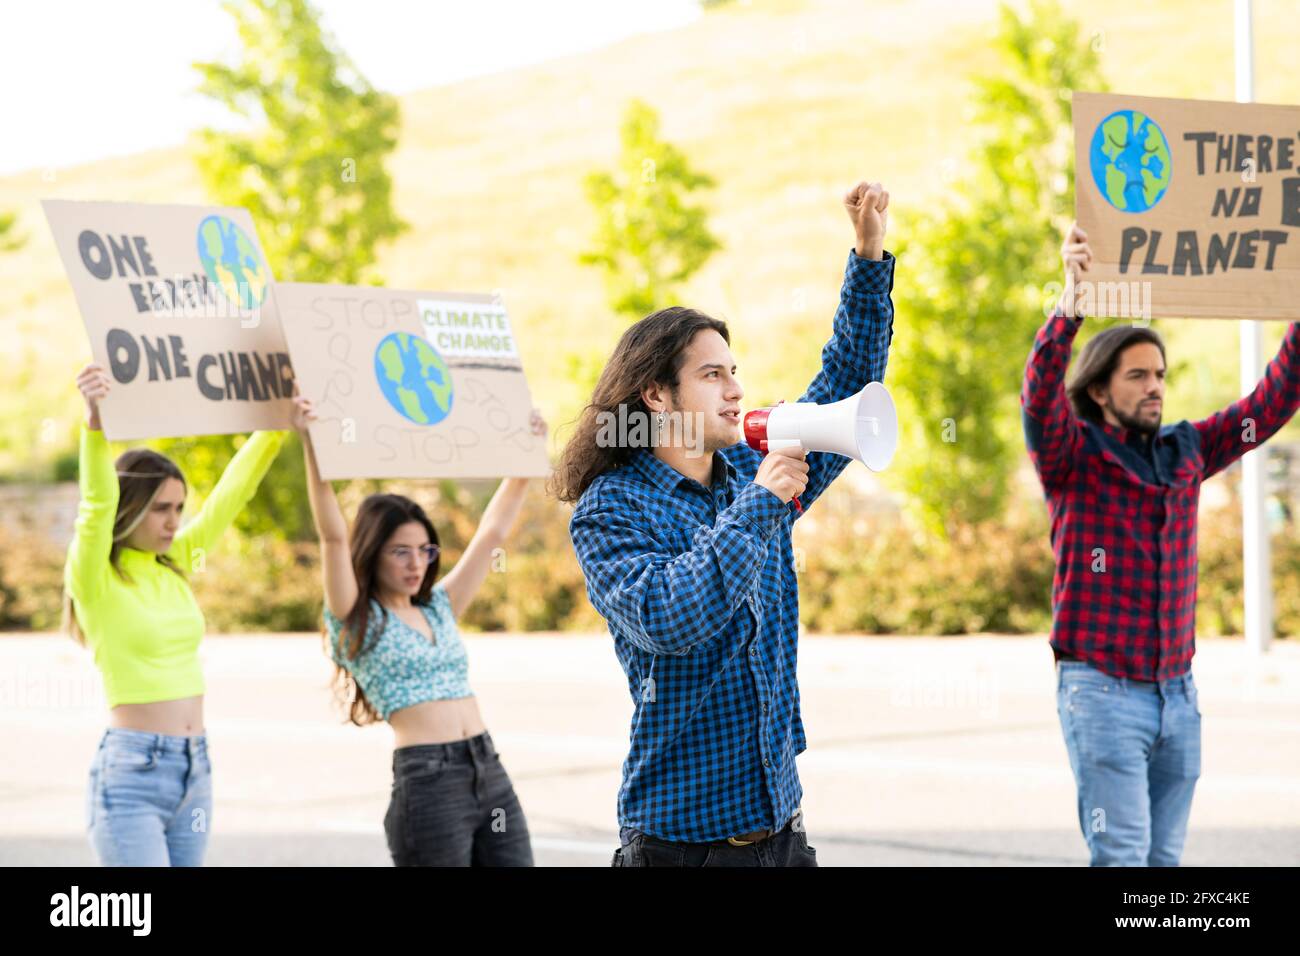 Junger männlicher Aktivist, der gegen den Klimawandel protestiert, wobei männliche und weibliche Demonstranten auf dem Weg sind Stockfoto